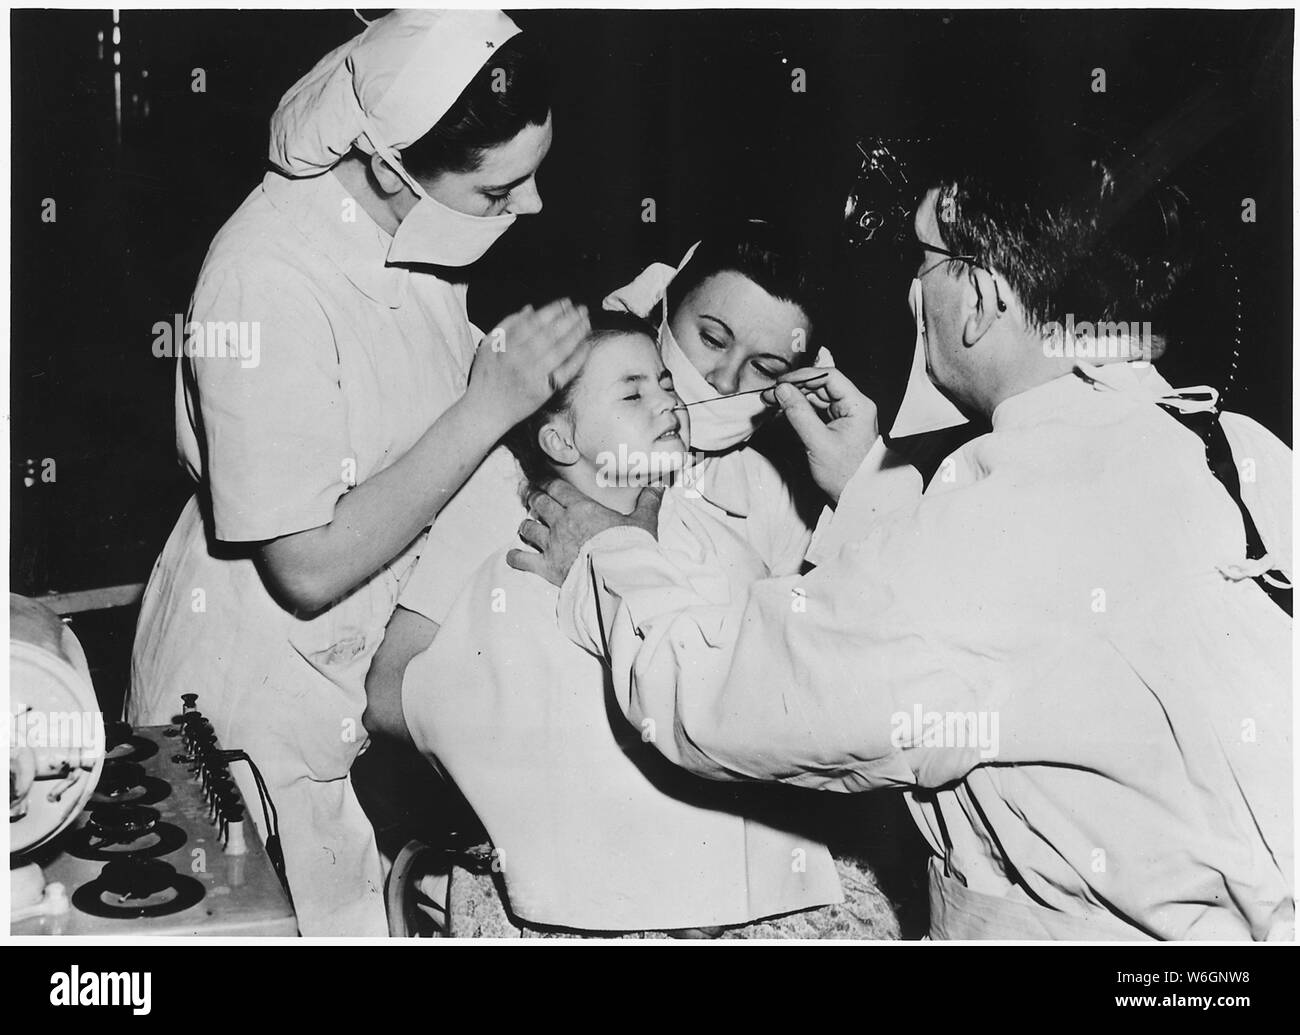 La France. Le Radium est utilisé par les médecins pour soigner une infection nasale de cette petite fille dans un hôpital français. Ce et des médicaments comme la pénicilline et la streptomycine sont parmi les nombreuses choses qui ont été mis à la disposition de médecins au moyen de fonds de contrepartie Banque D'Images